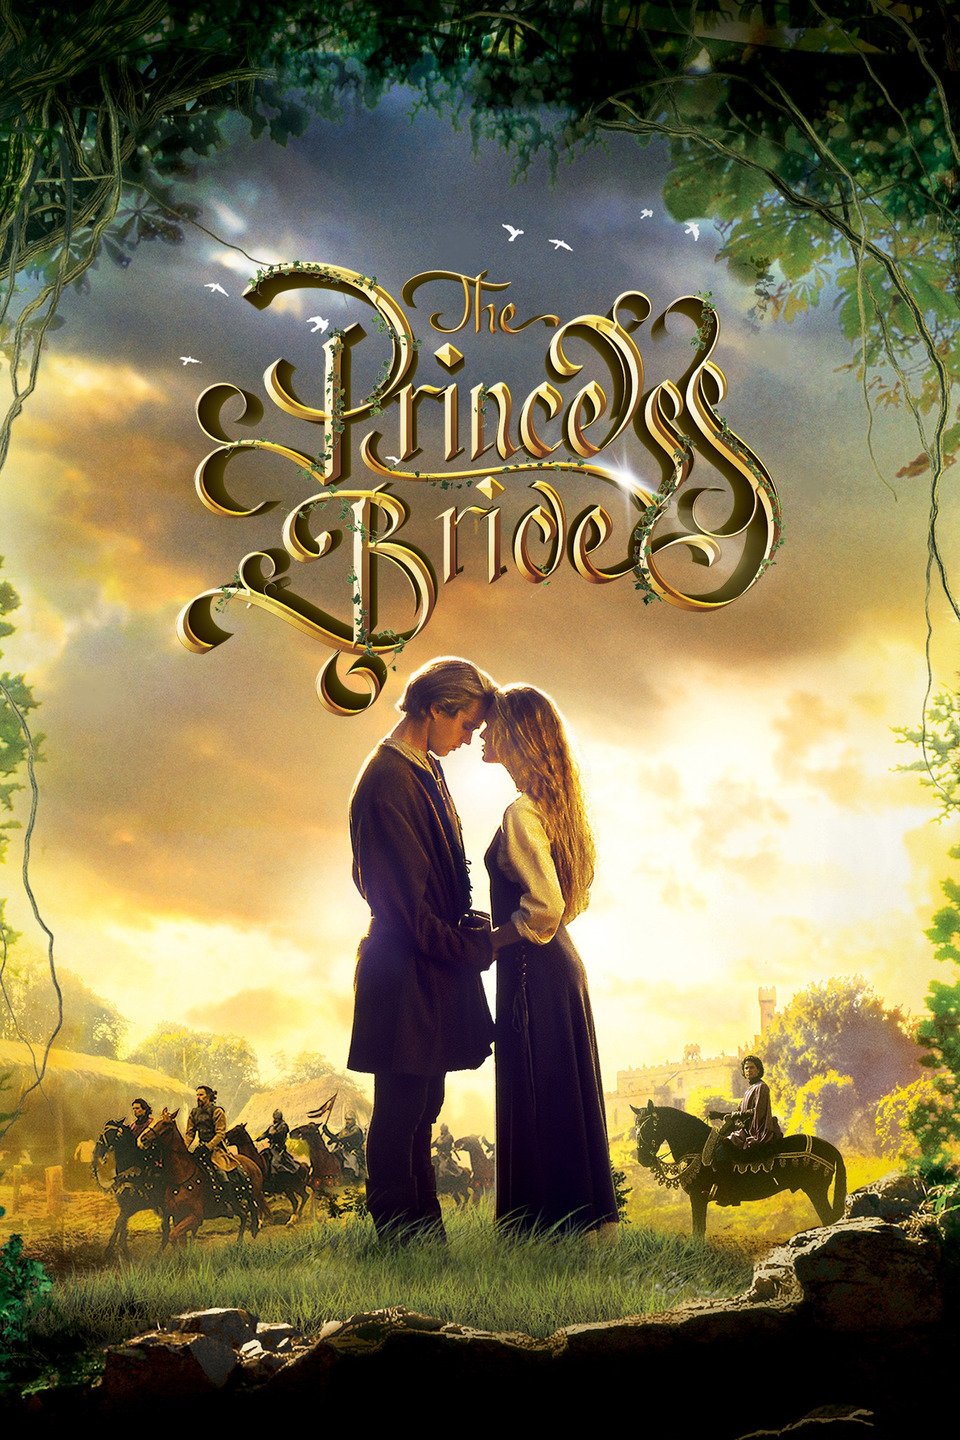 Princess Bride movie poster